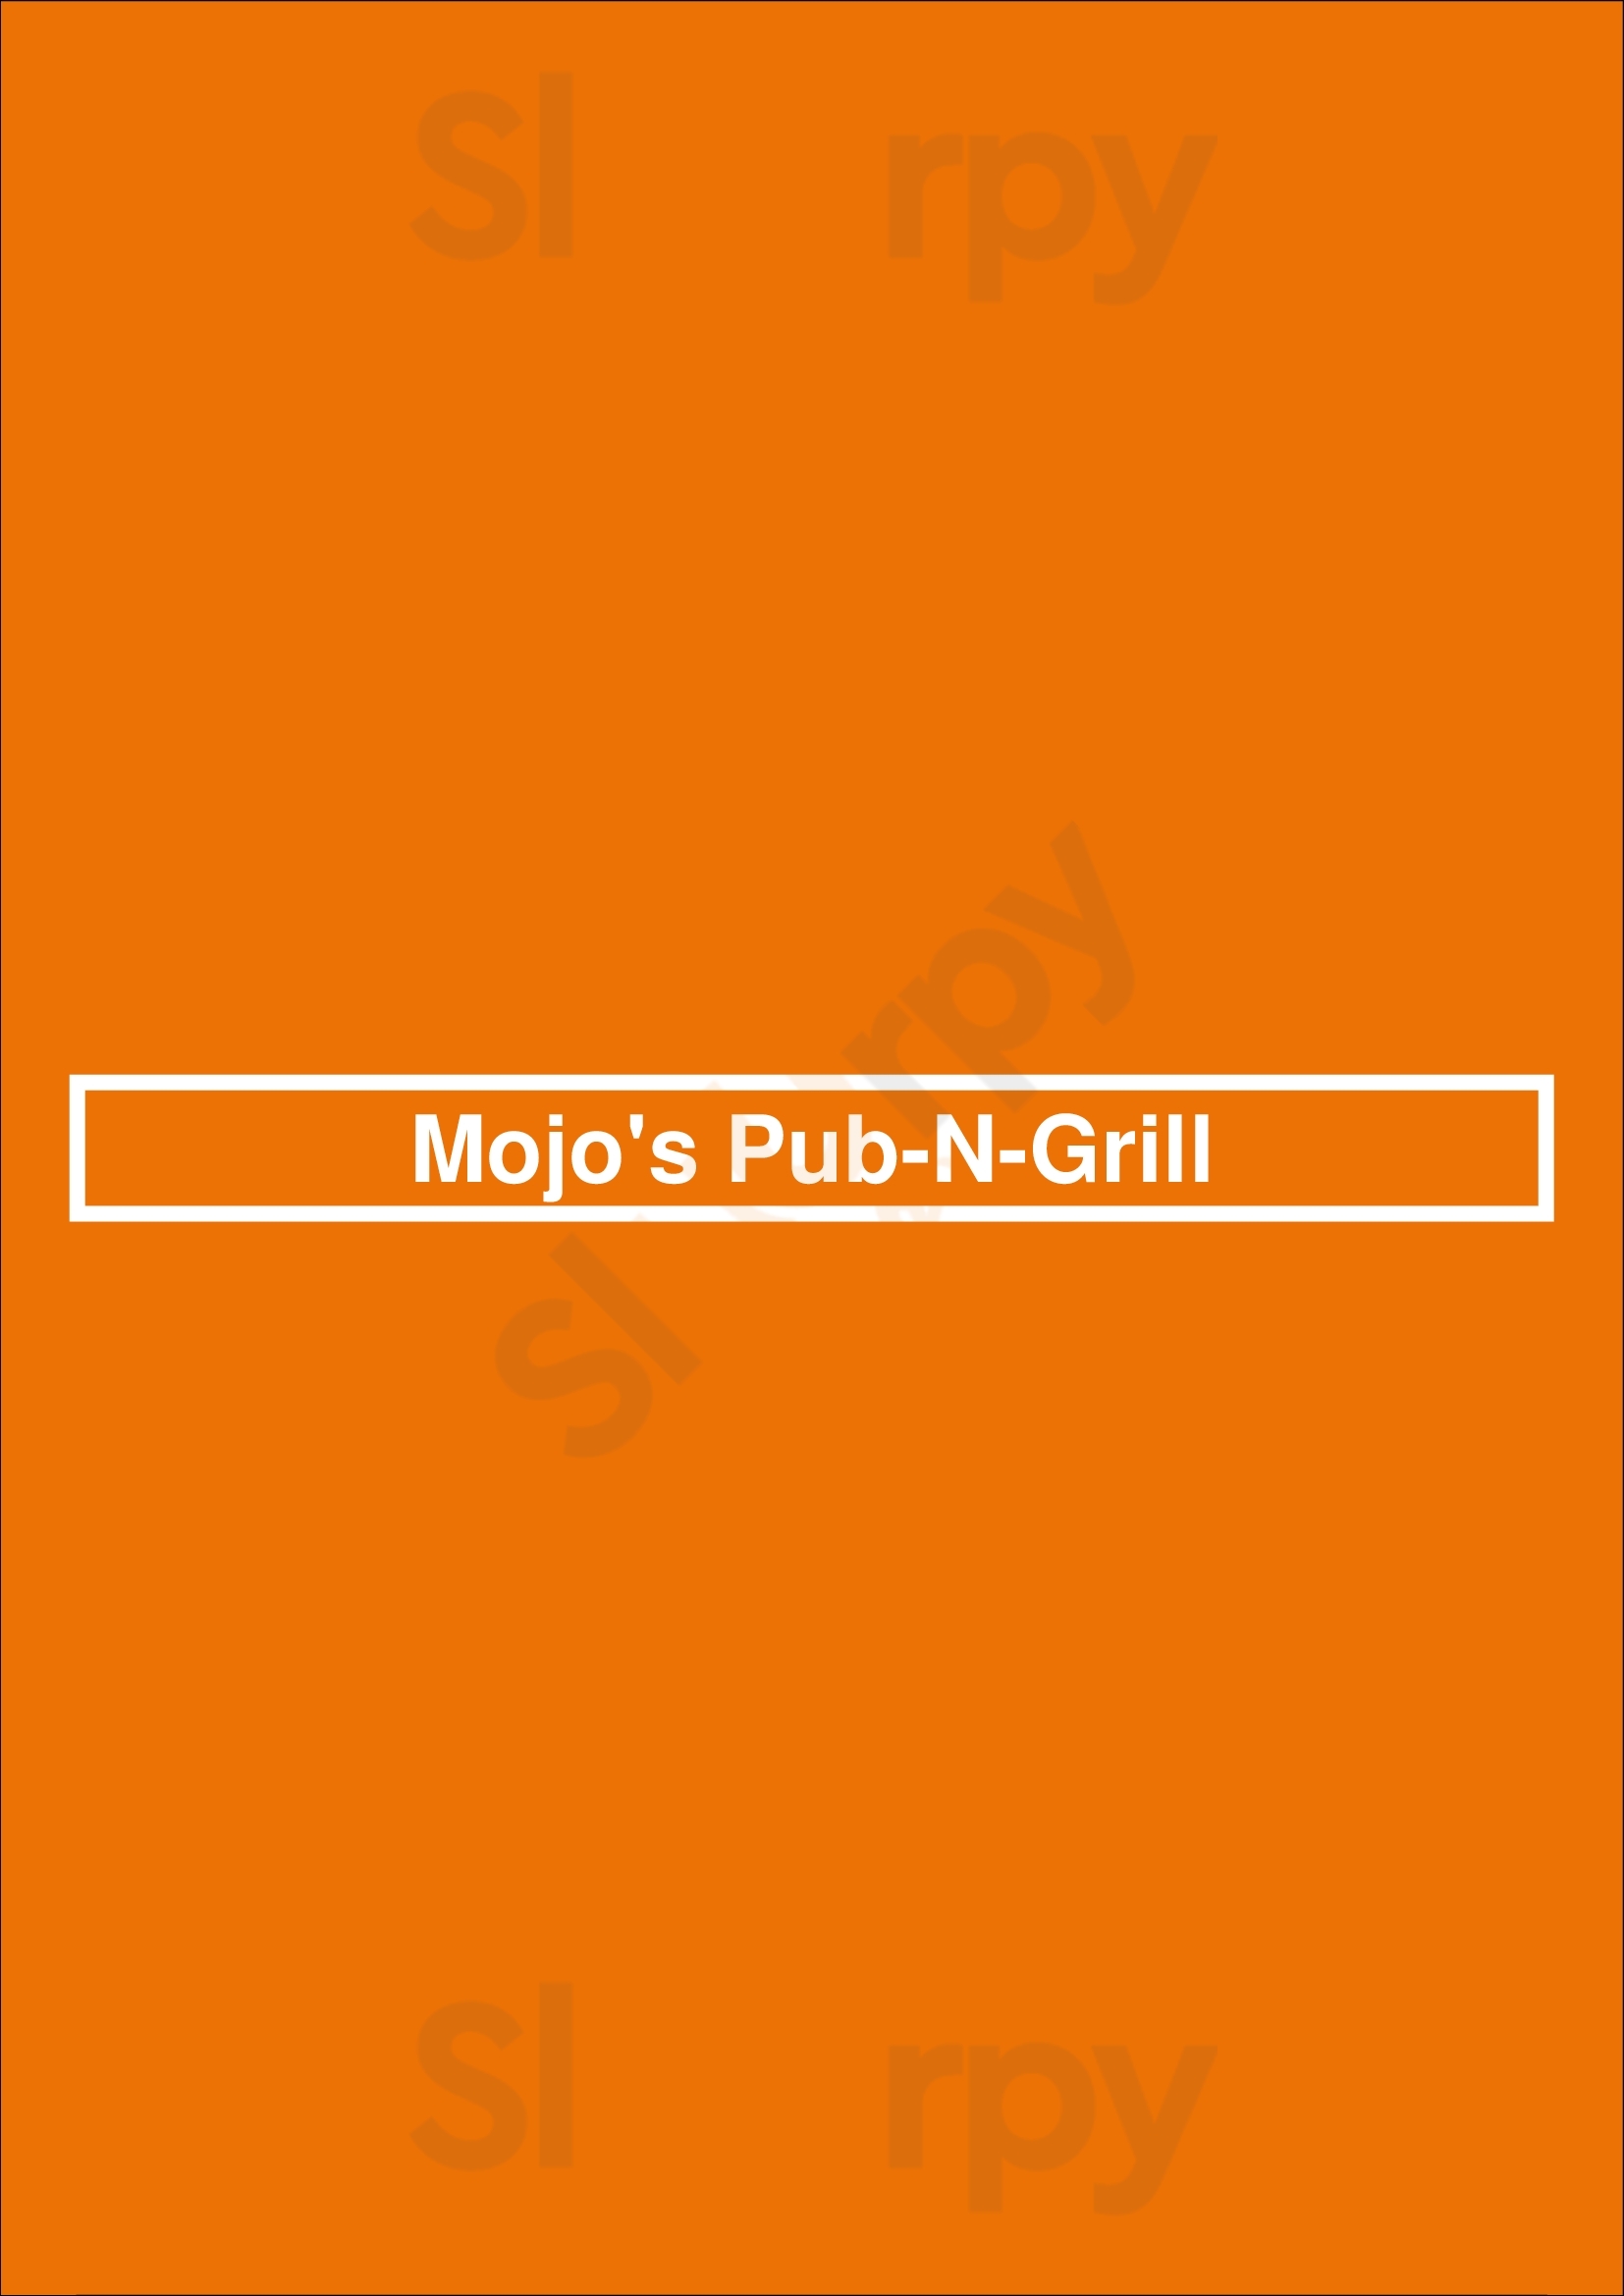 Mojo's Pub-n-grill Austintown Menu - 1